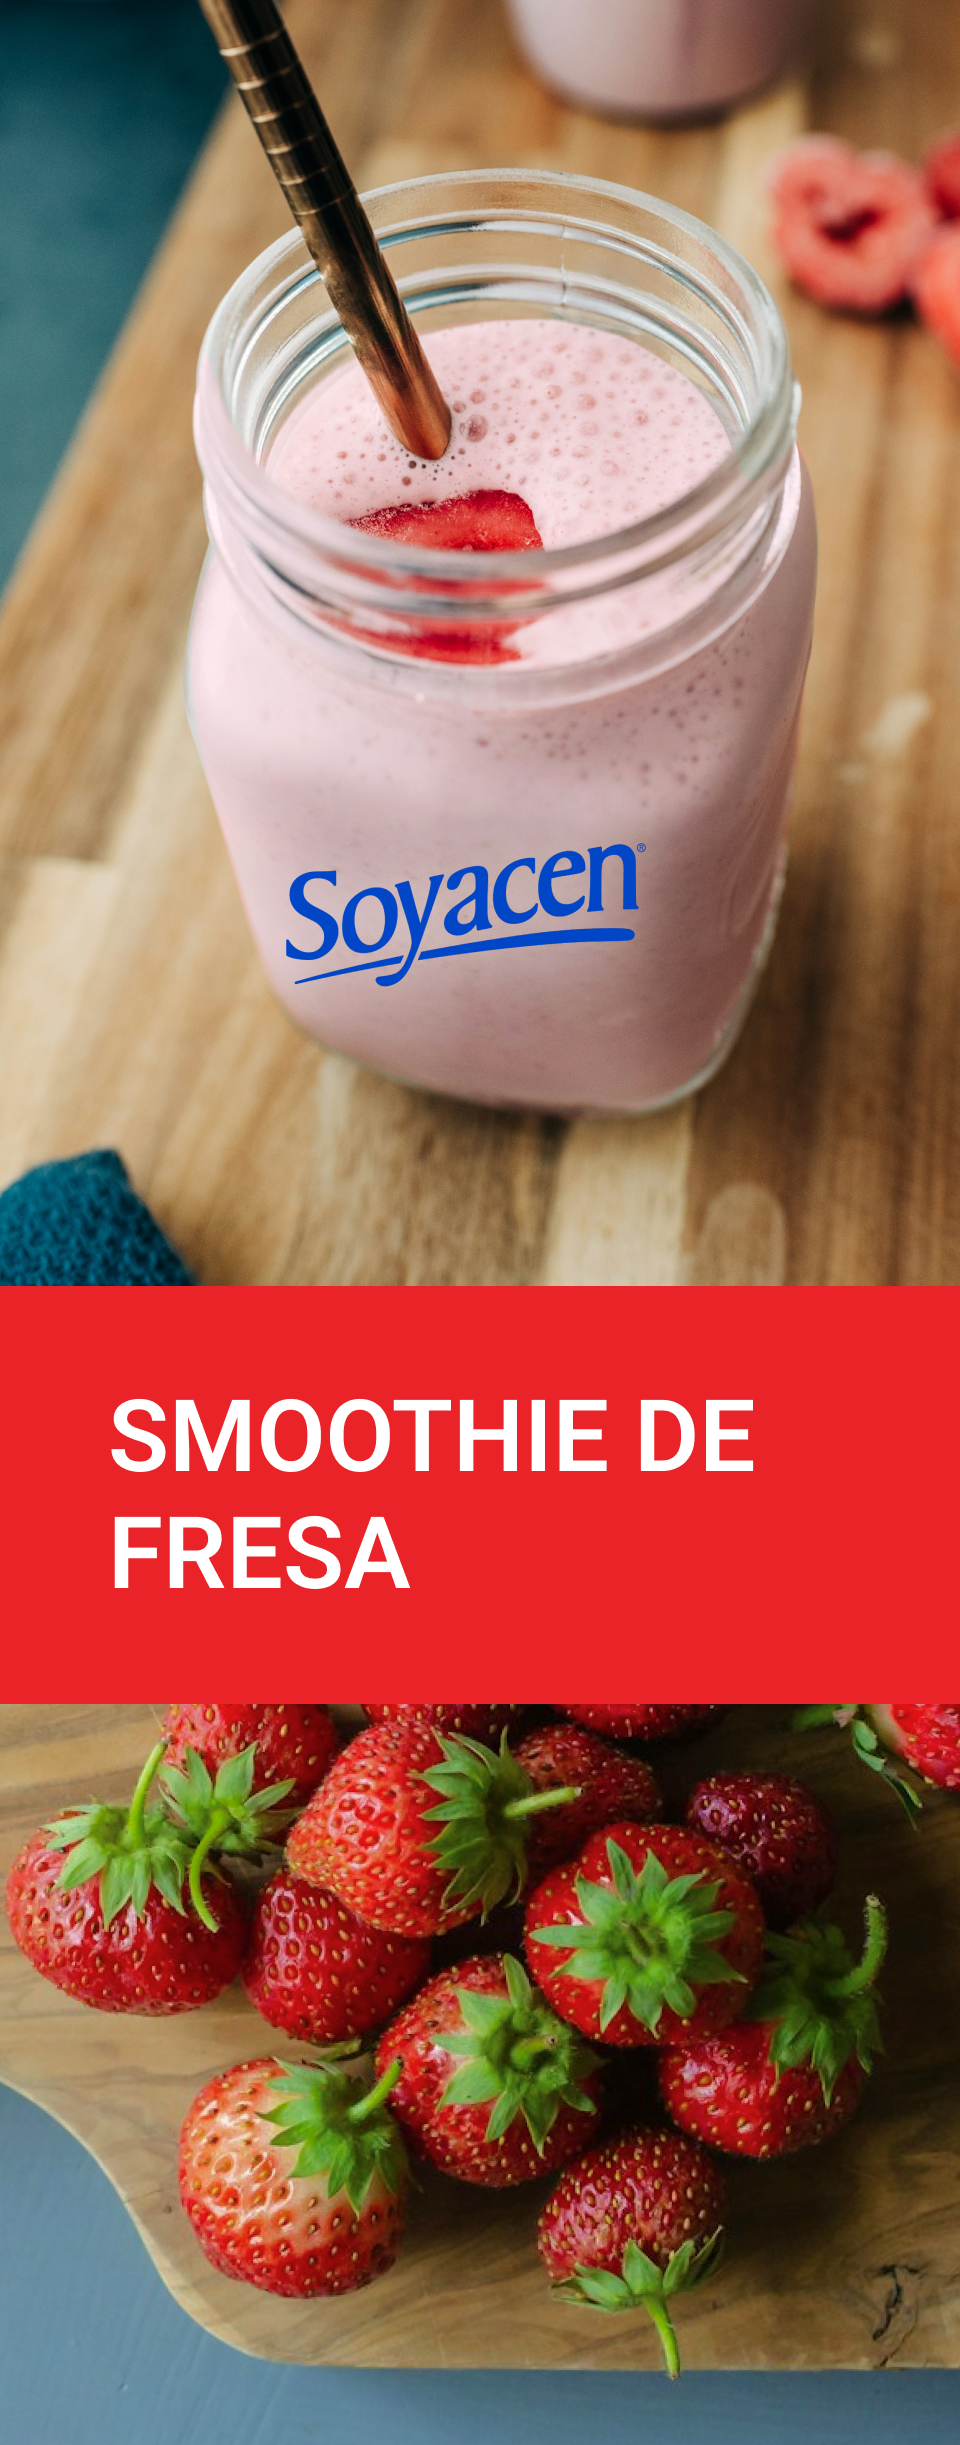 smoothie de fresa con soyacen